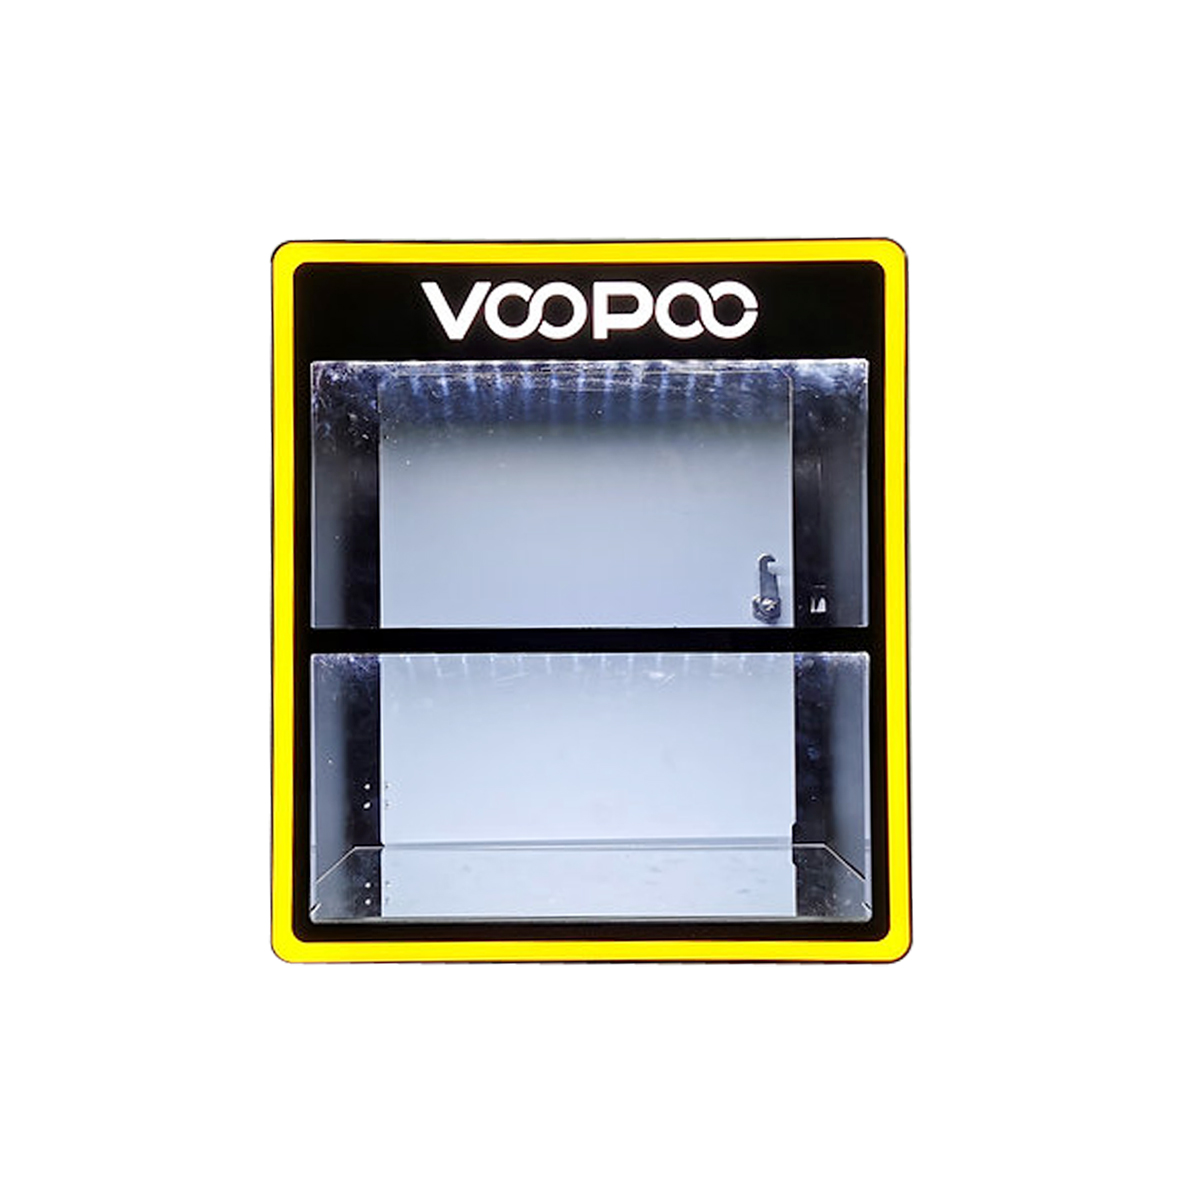 Acryl Counter Top Vape Display, Acryl Vaporizer Display Stand